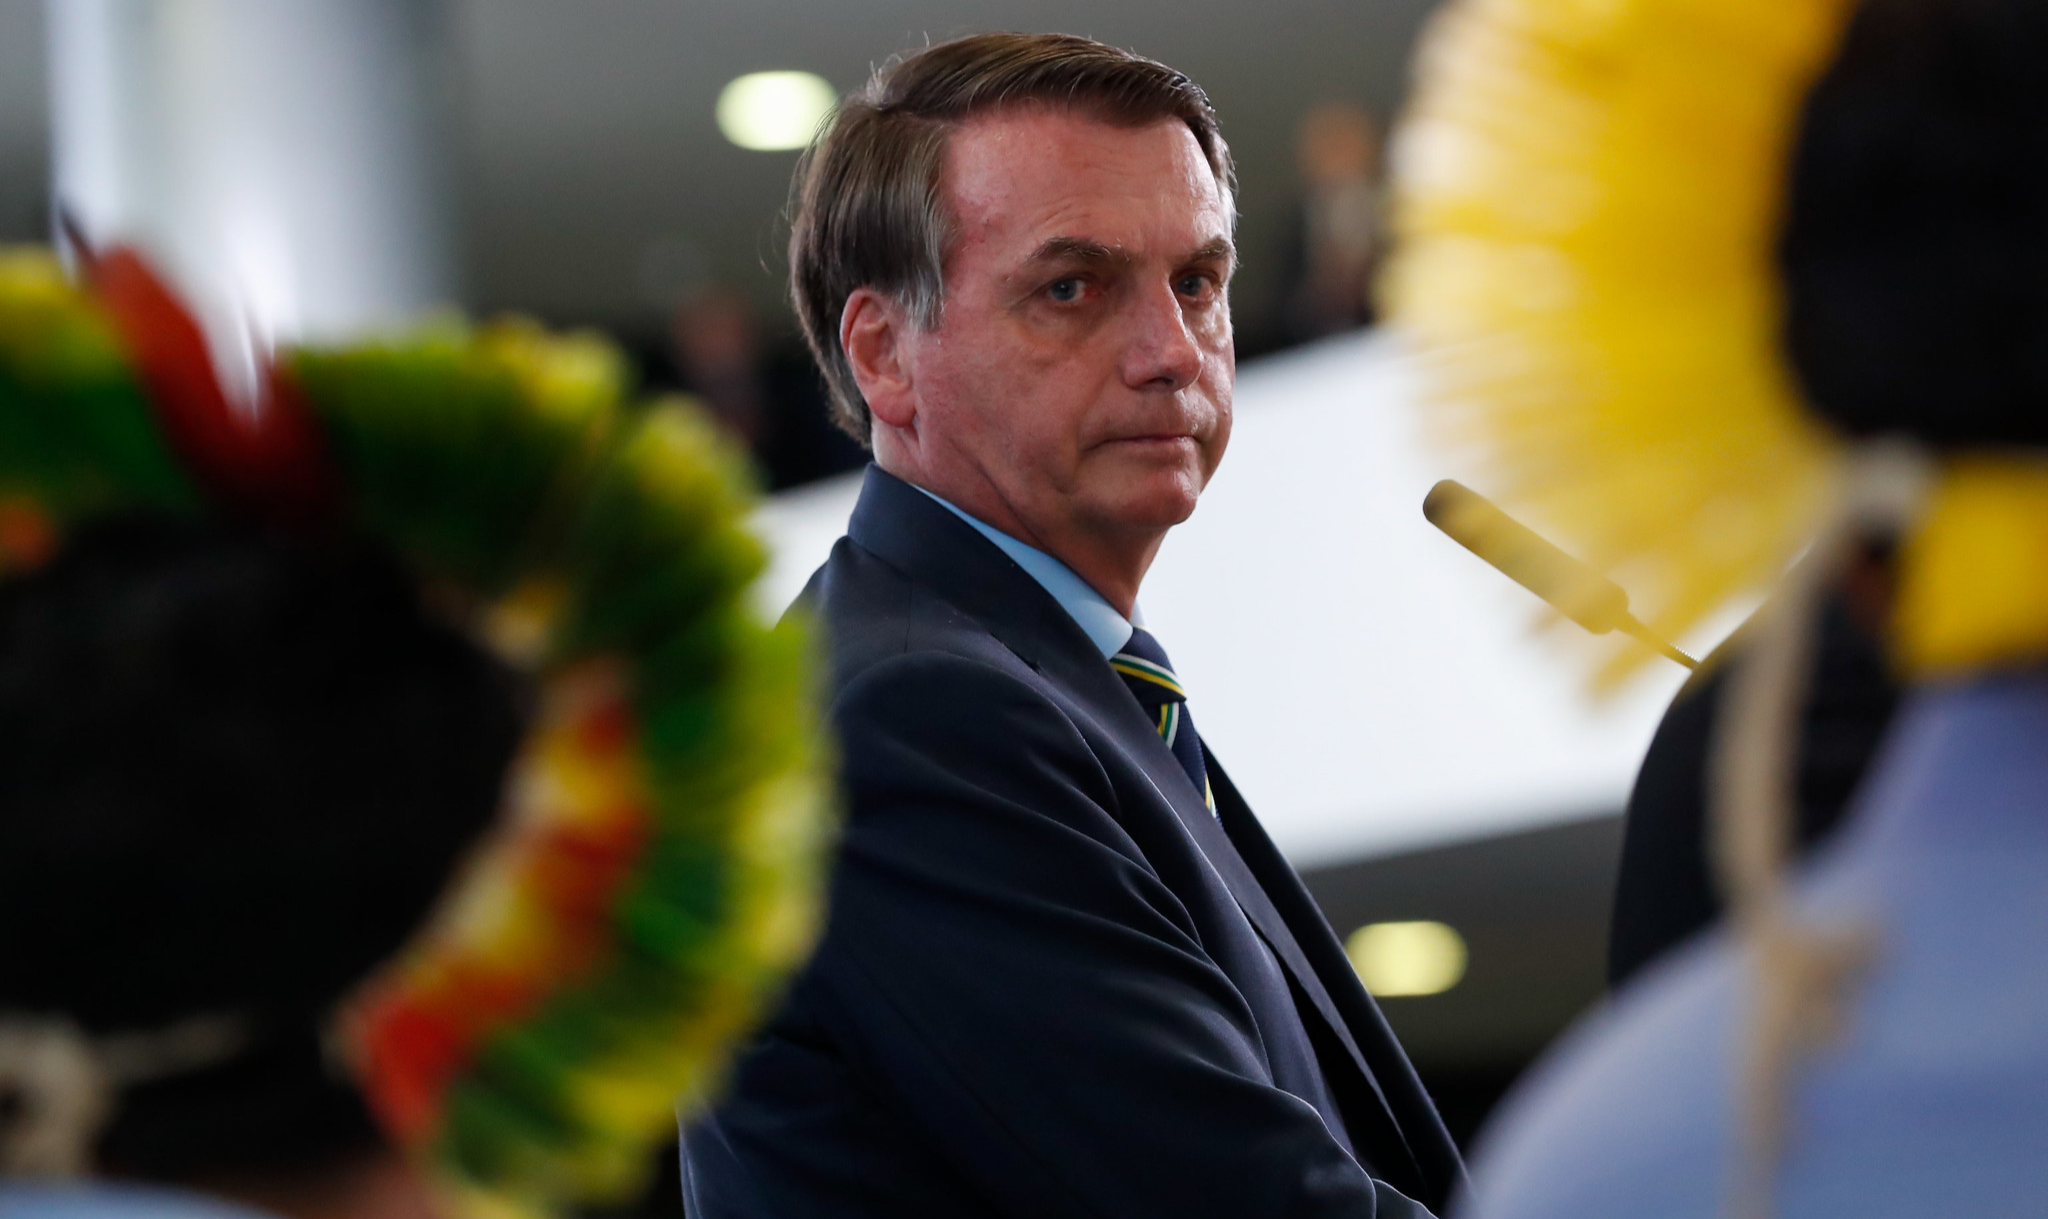 Presidente brasileiro compartilhou convocação a protesto que pede fechamento do Congresso e do STF; britânico The Guardian diz que ação foi recebida com 'indignação'